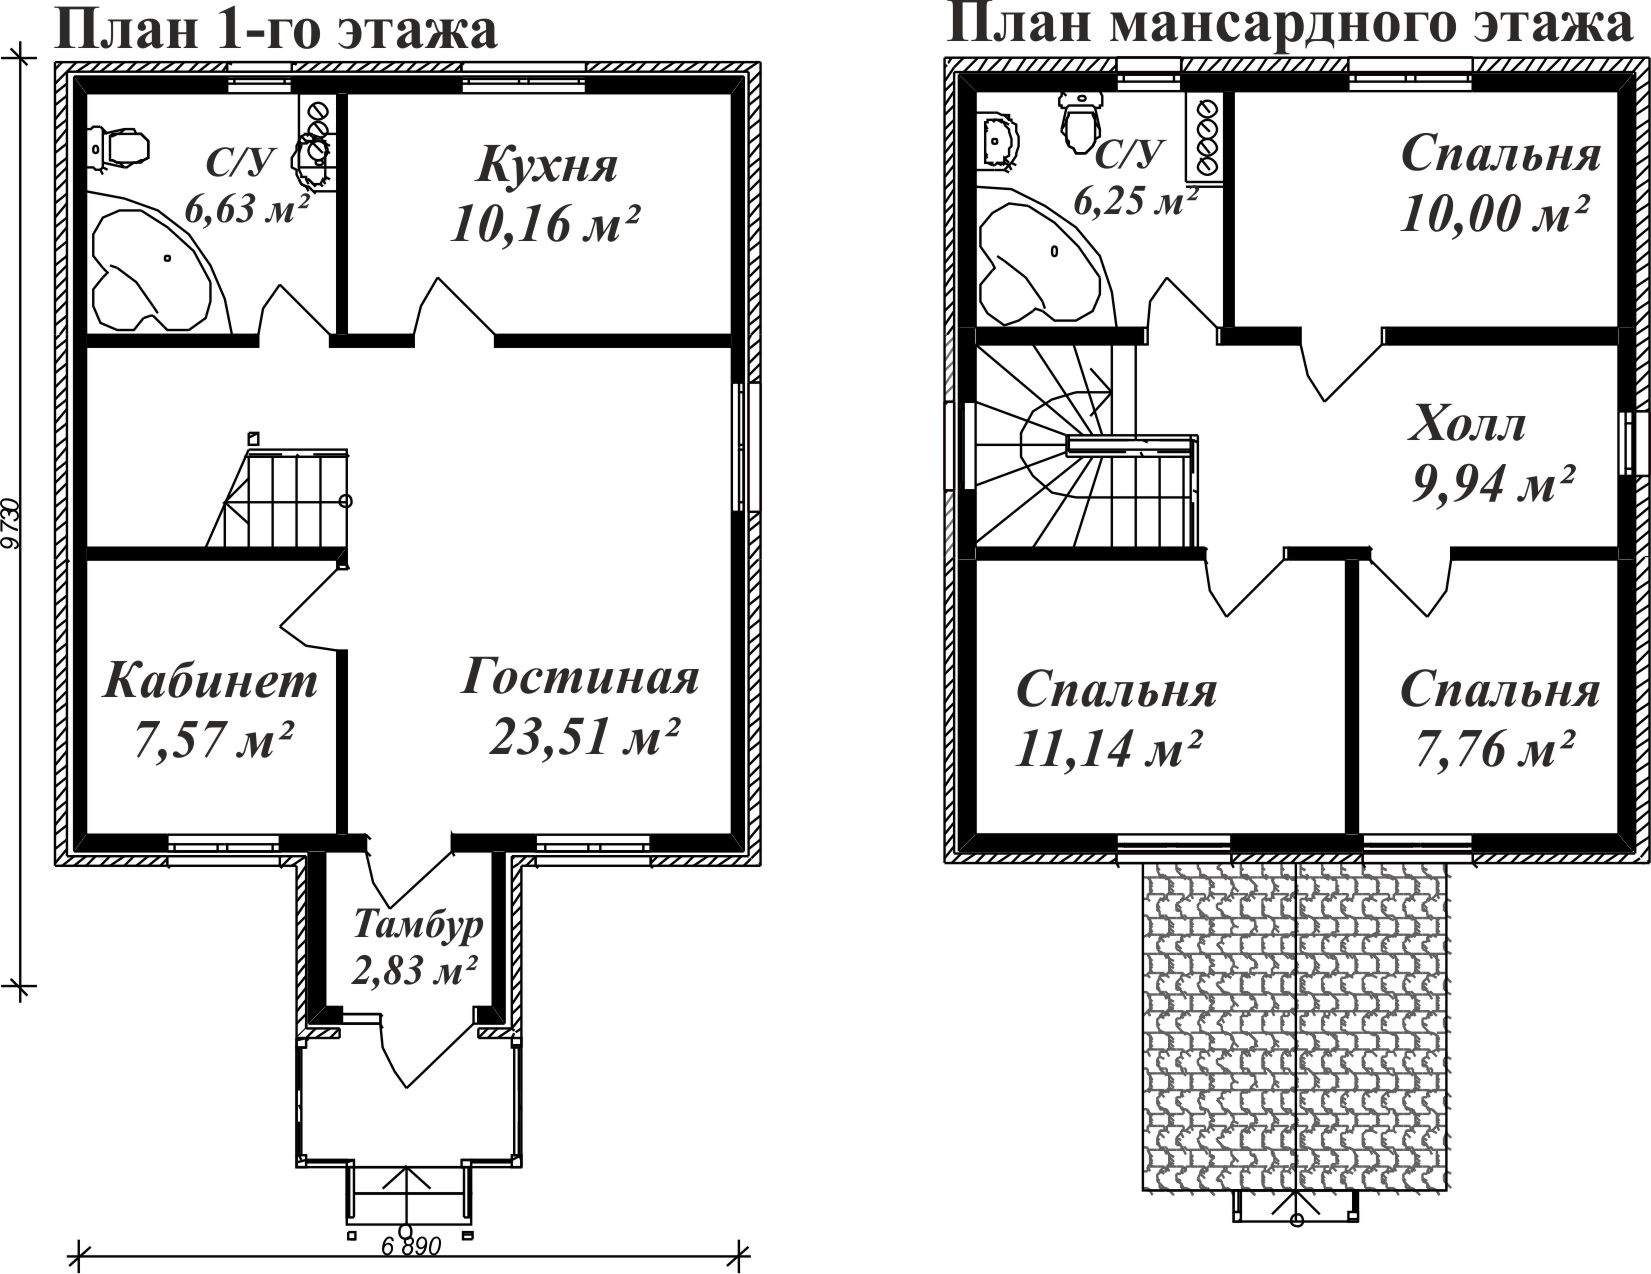 Схема домов 2 этажа. Схемы двухэтажных домов. Планировки домов двухэтажных. Чертежи двухэтажных домов. Планировка двухэтажного дома.